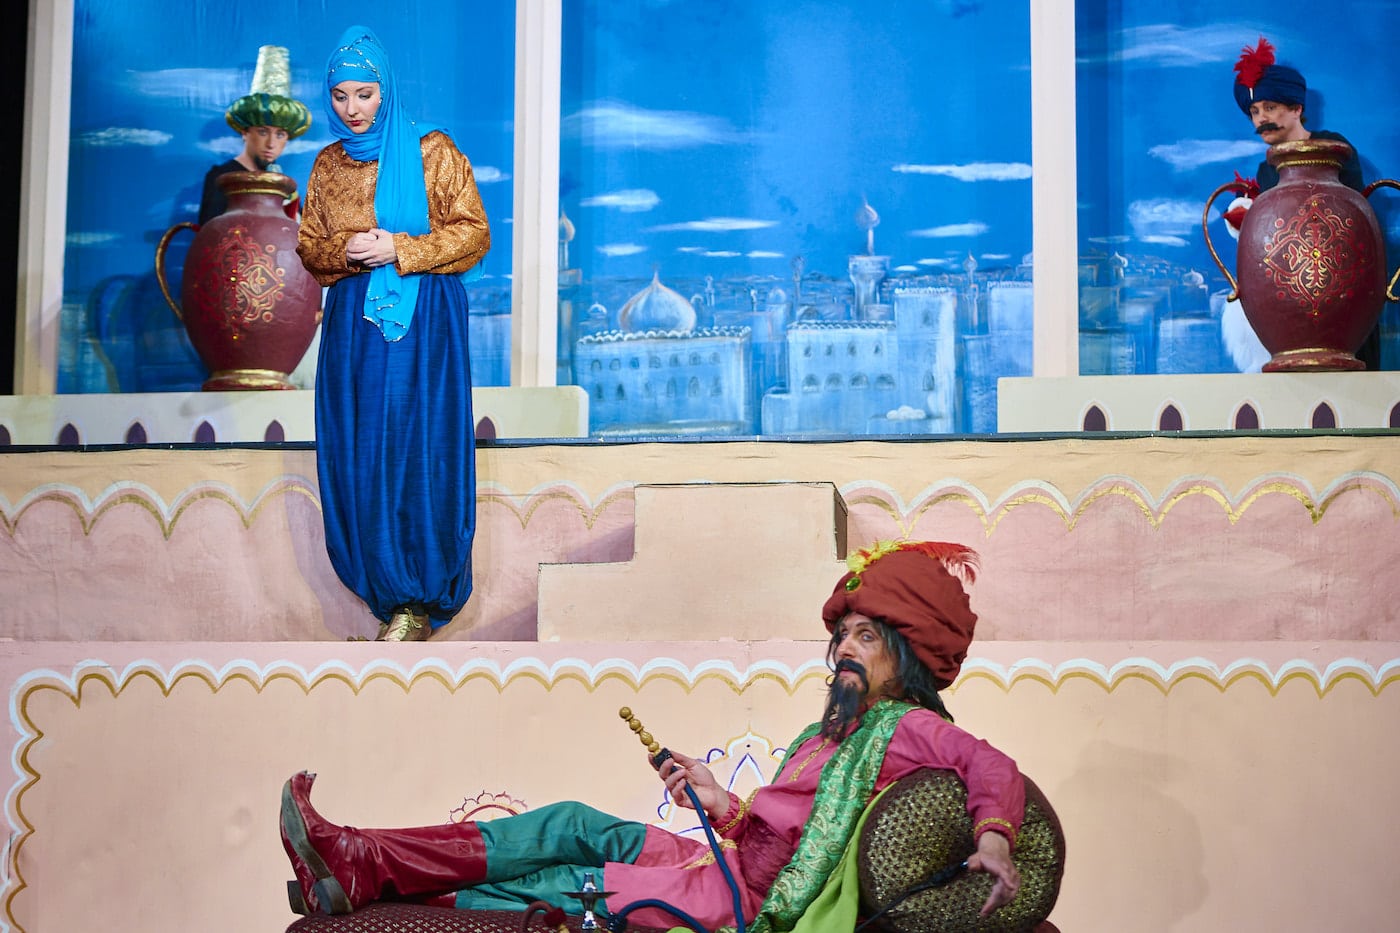 Zauberhaft was Kalif Storch im Münchner Theater für Kinder alles erlebt // HIMBEER